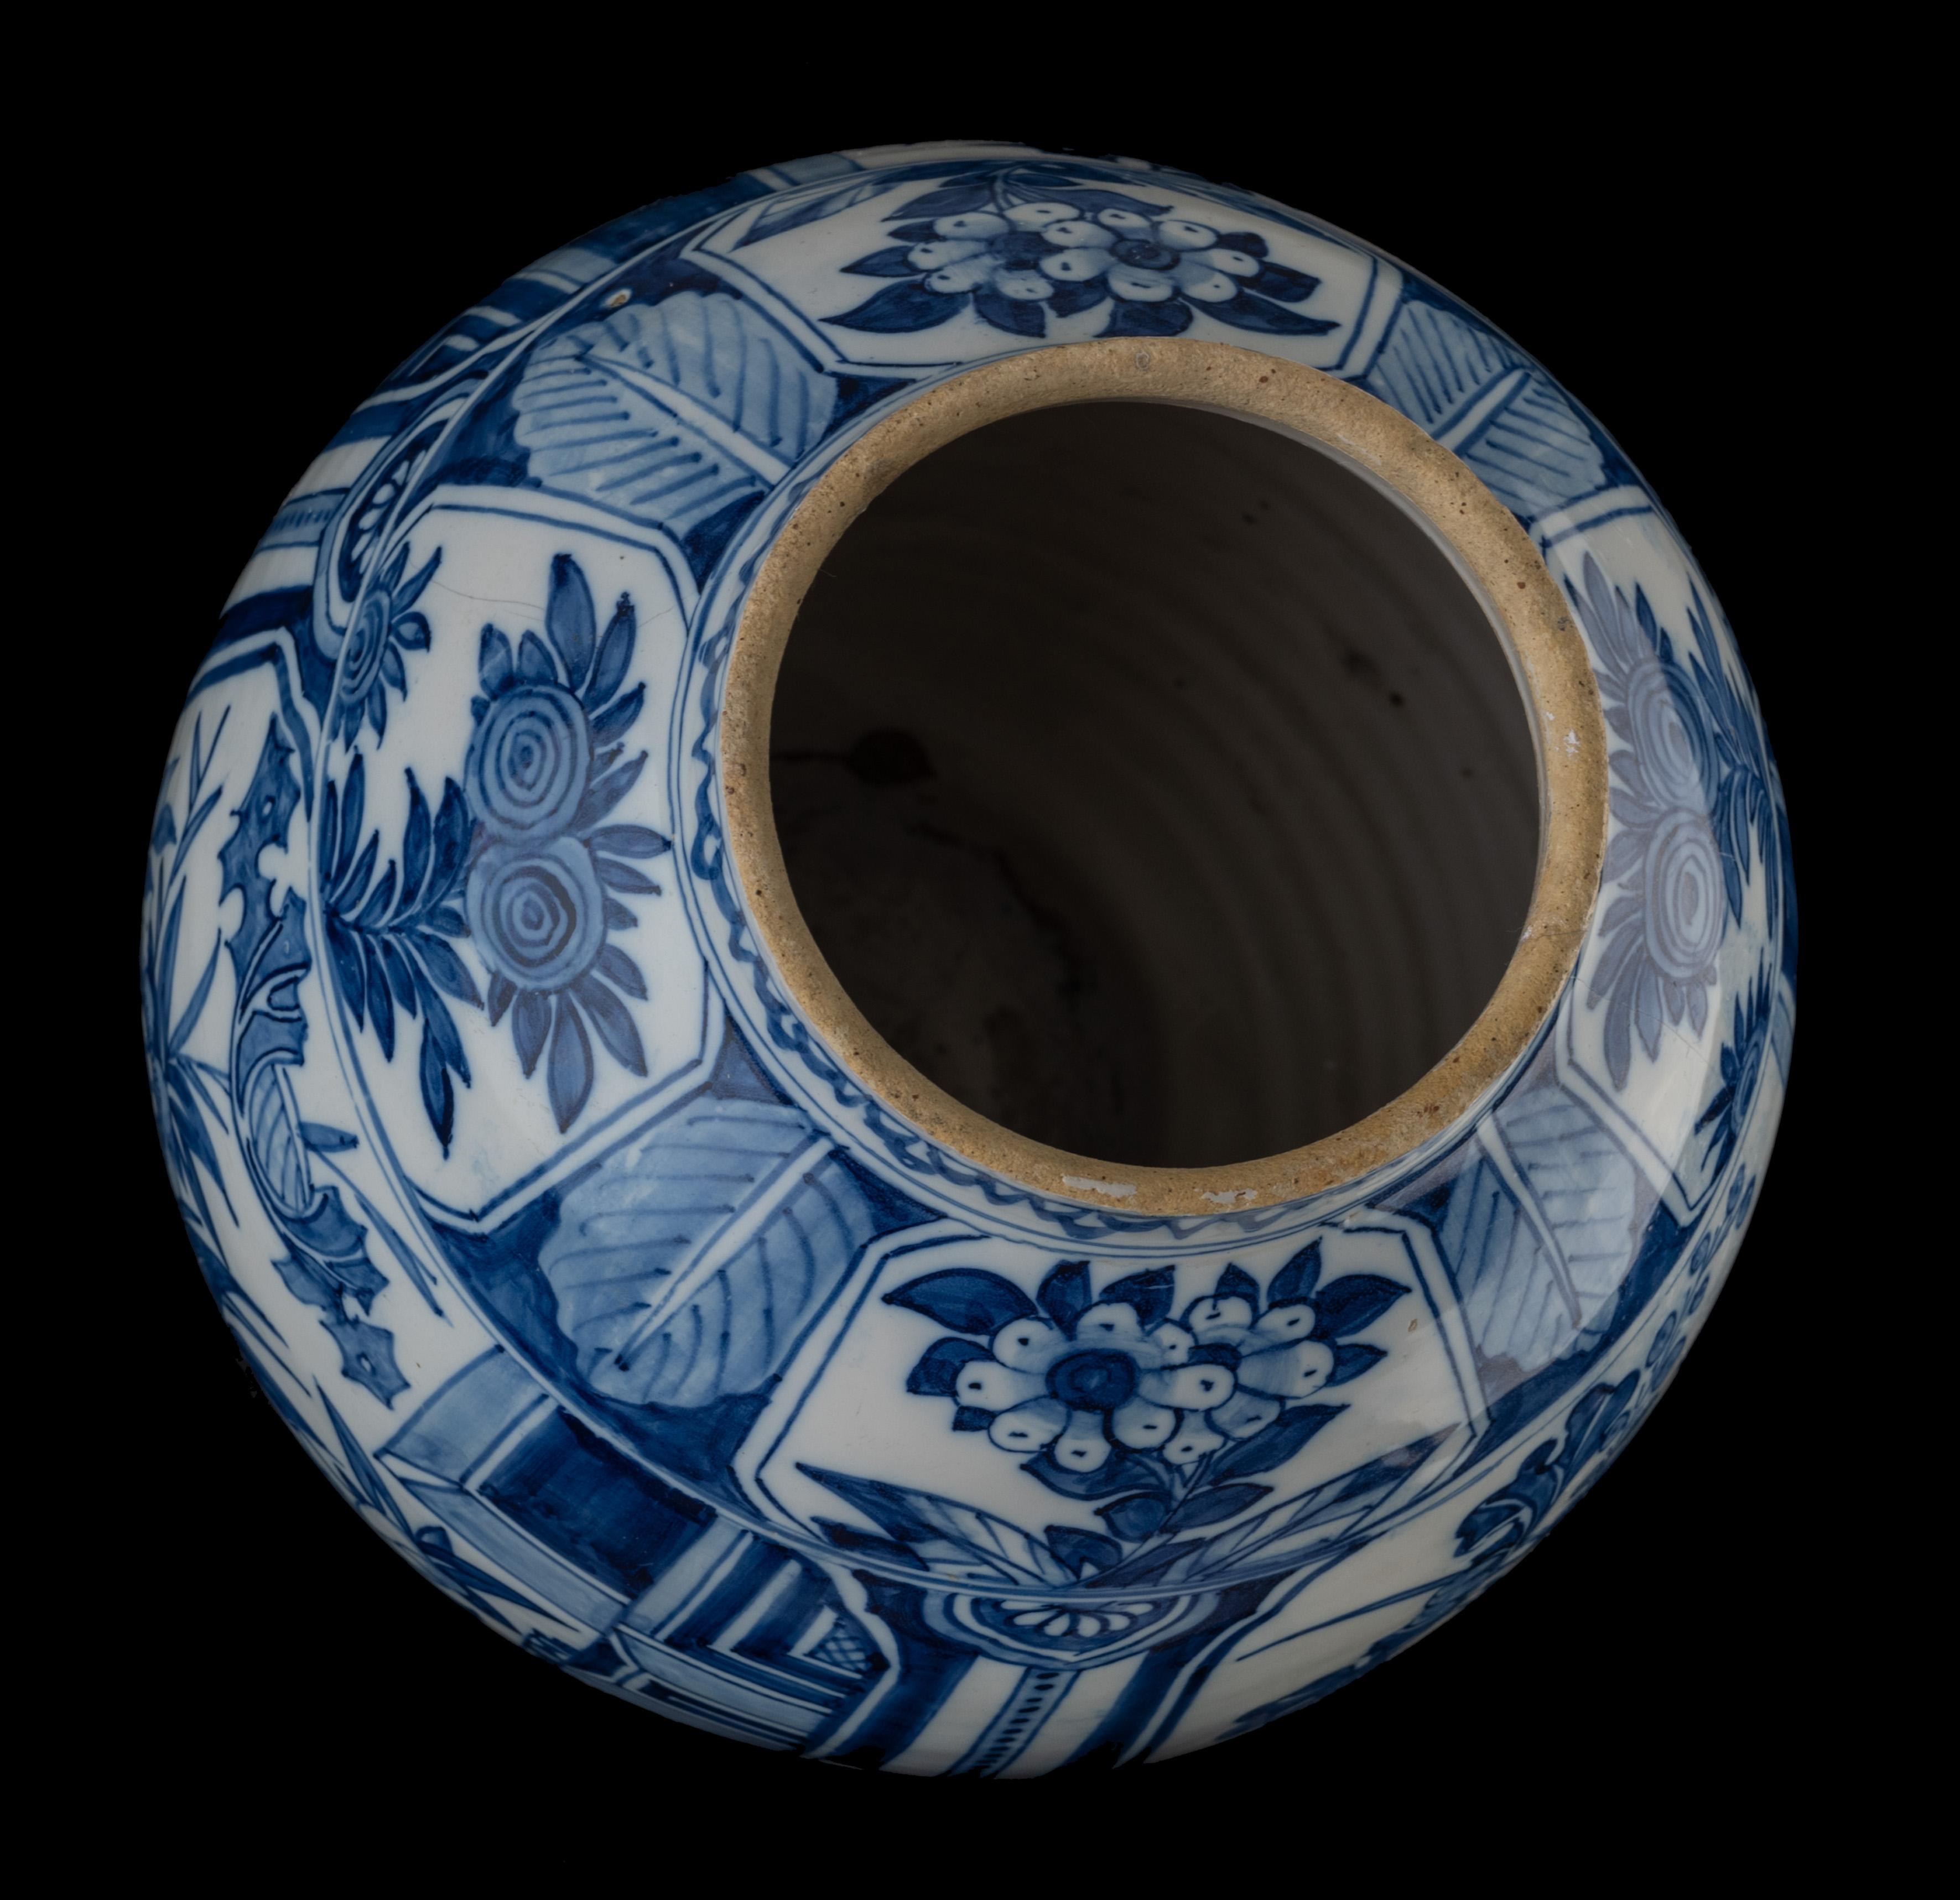 La jarre ovoïde repose sur un pied légèrement écarté, a un col court et droit, et est peinte en bleu avec un décor floral. Trois grands cartouches contenant des bouquets de fleurs ont été appliqués sur la panse, séparés l'un de l'autre par des